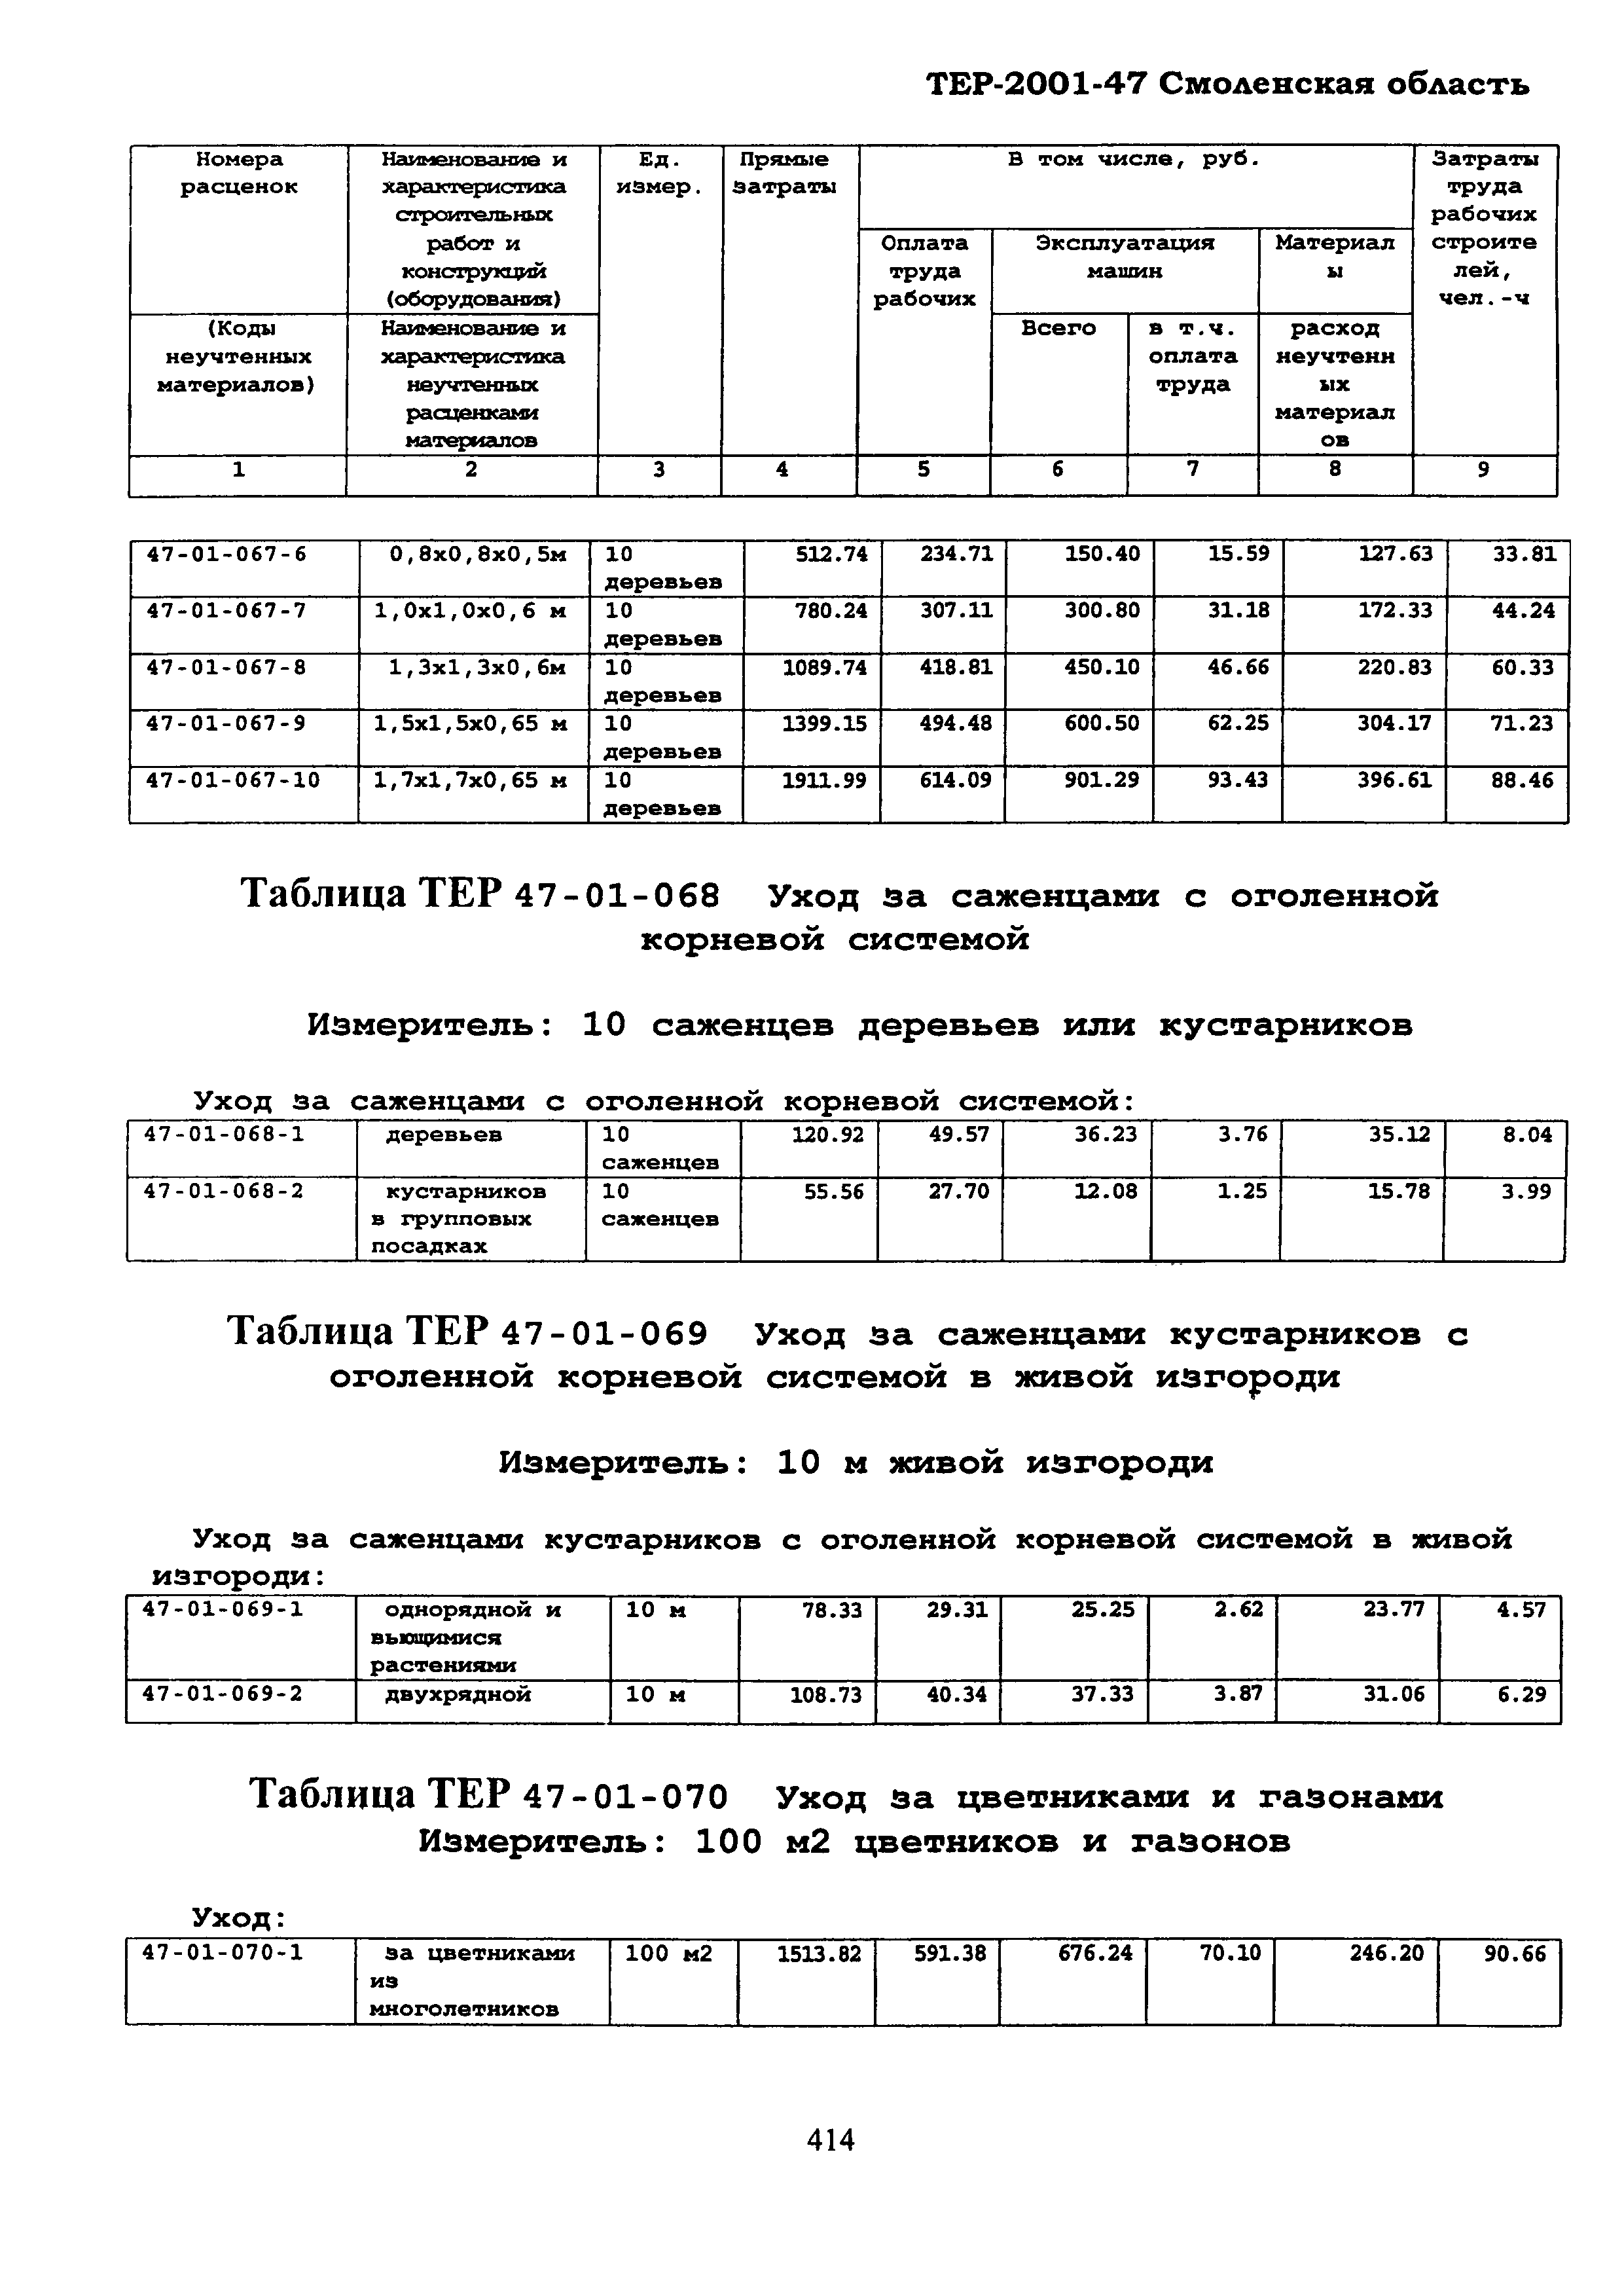 ТЕР Смоленской обл. 2001-47